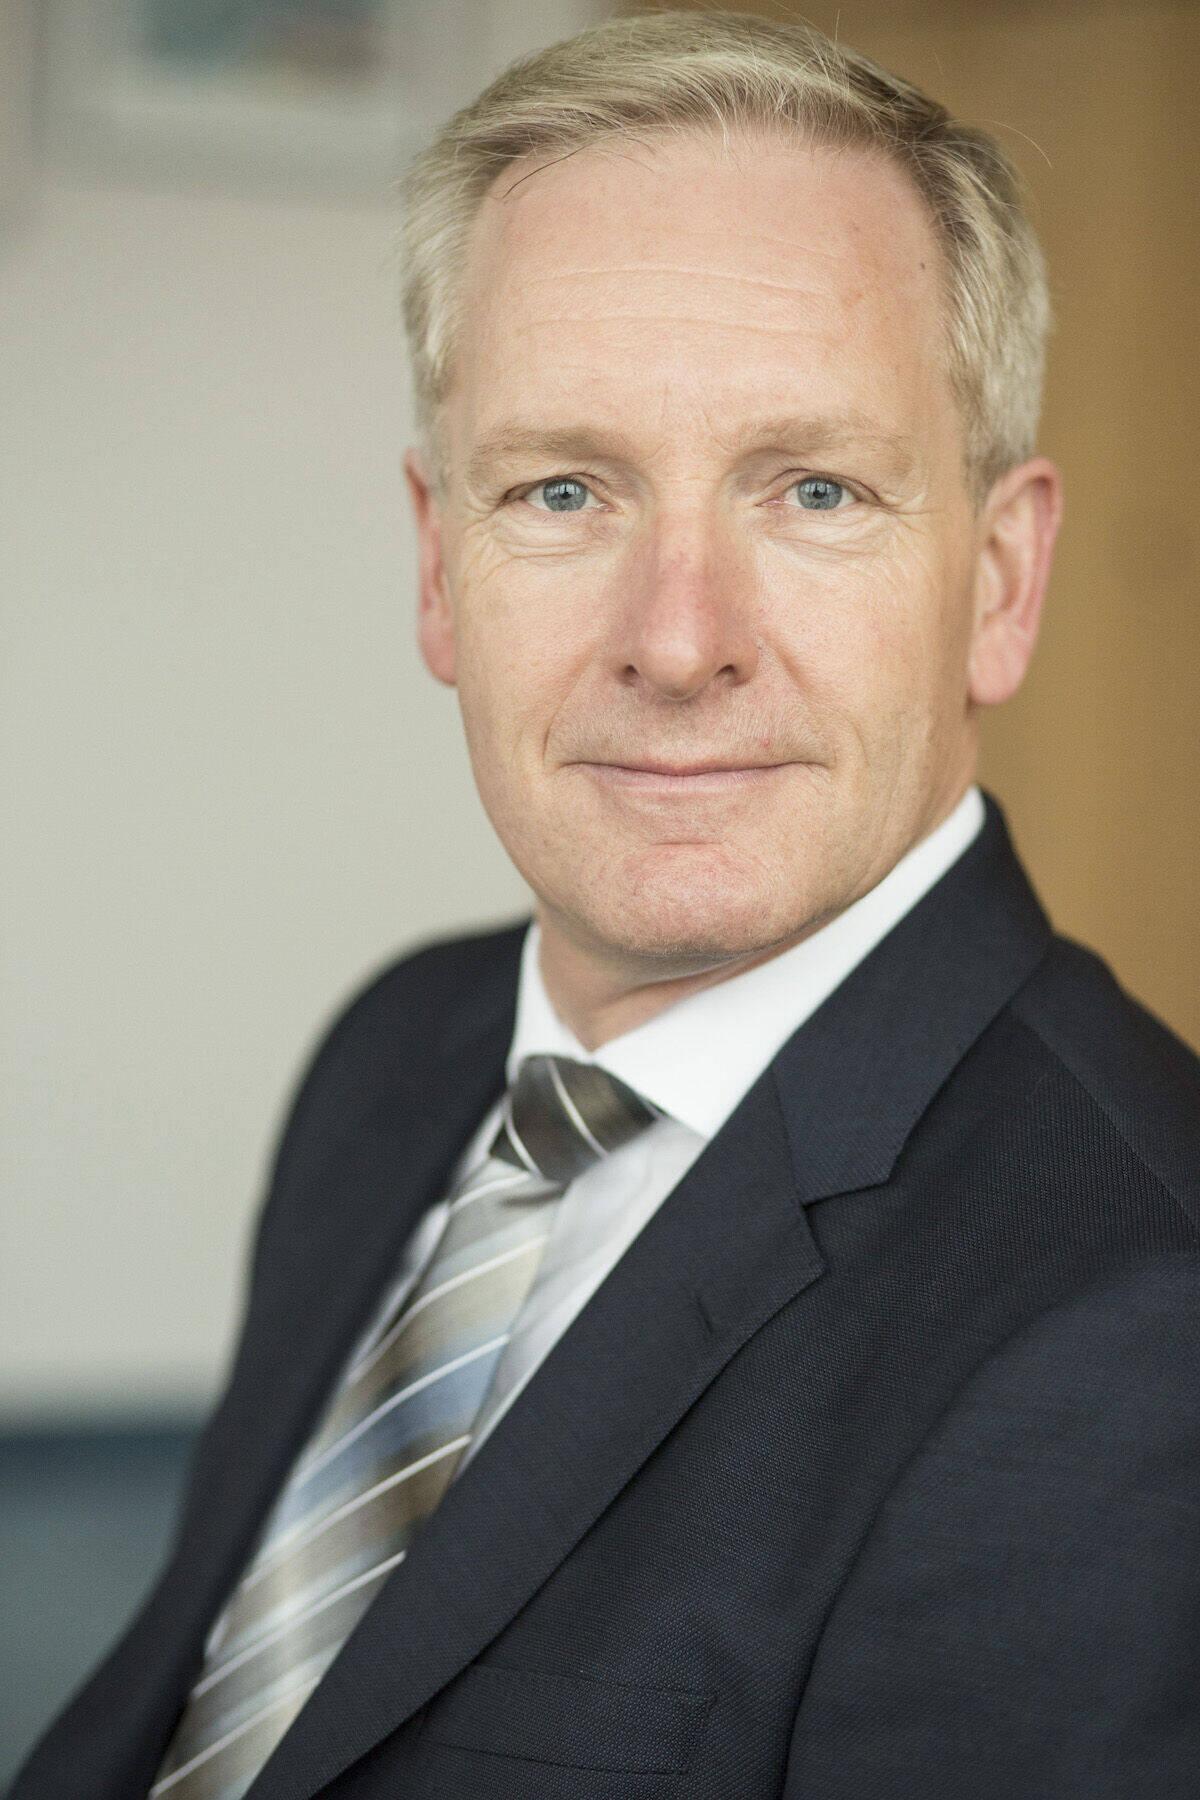 Hans-Jörg Klein übernahm die Marketingleitung bei Ford im September 2018.